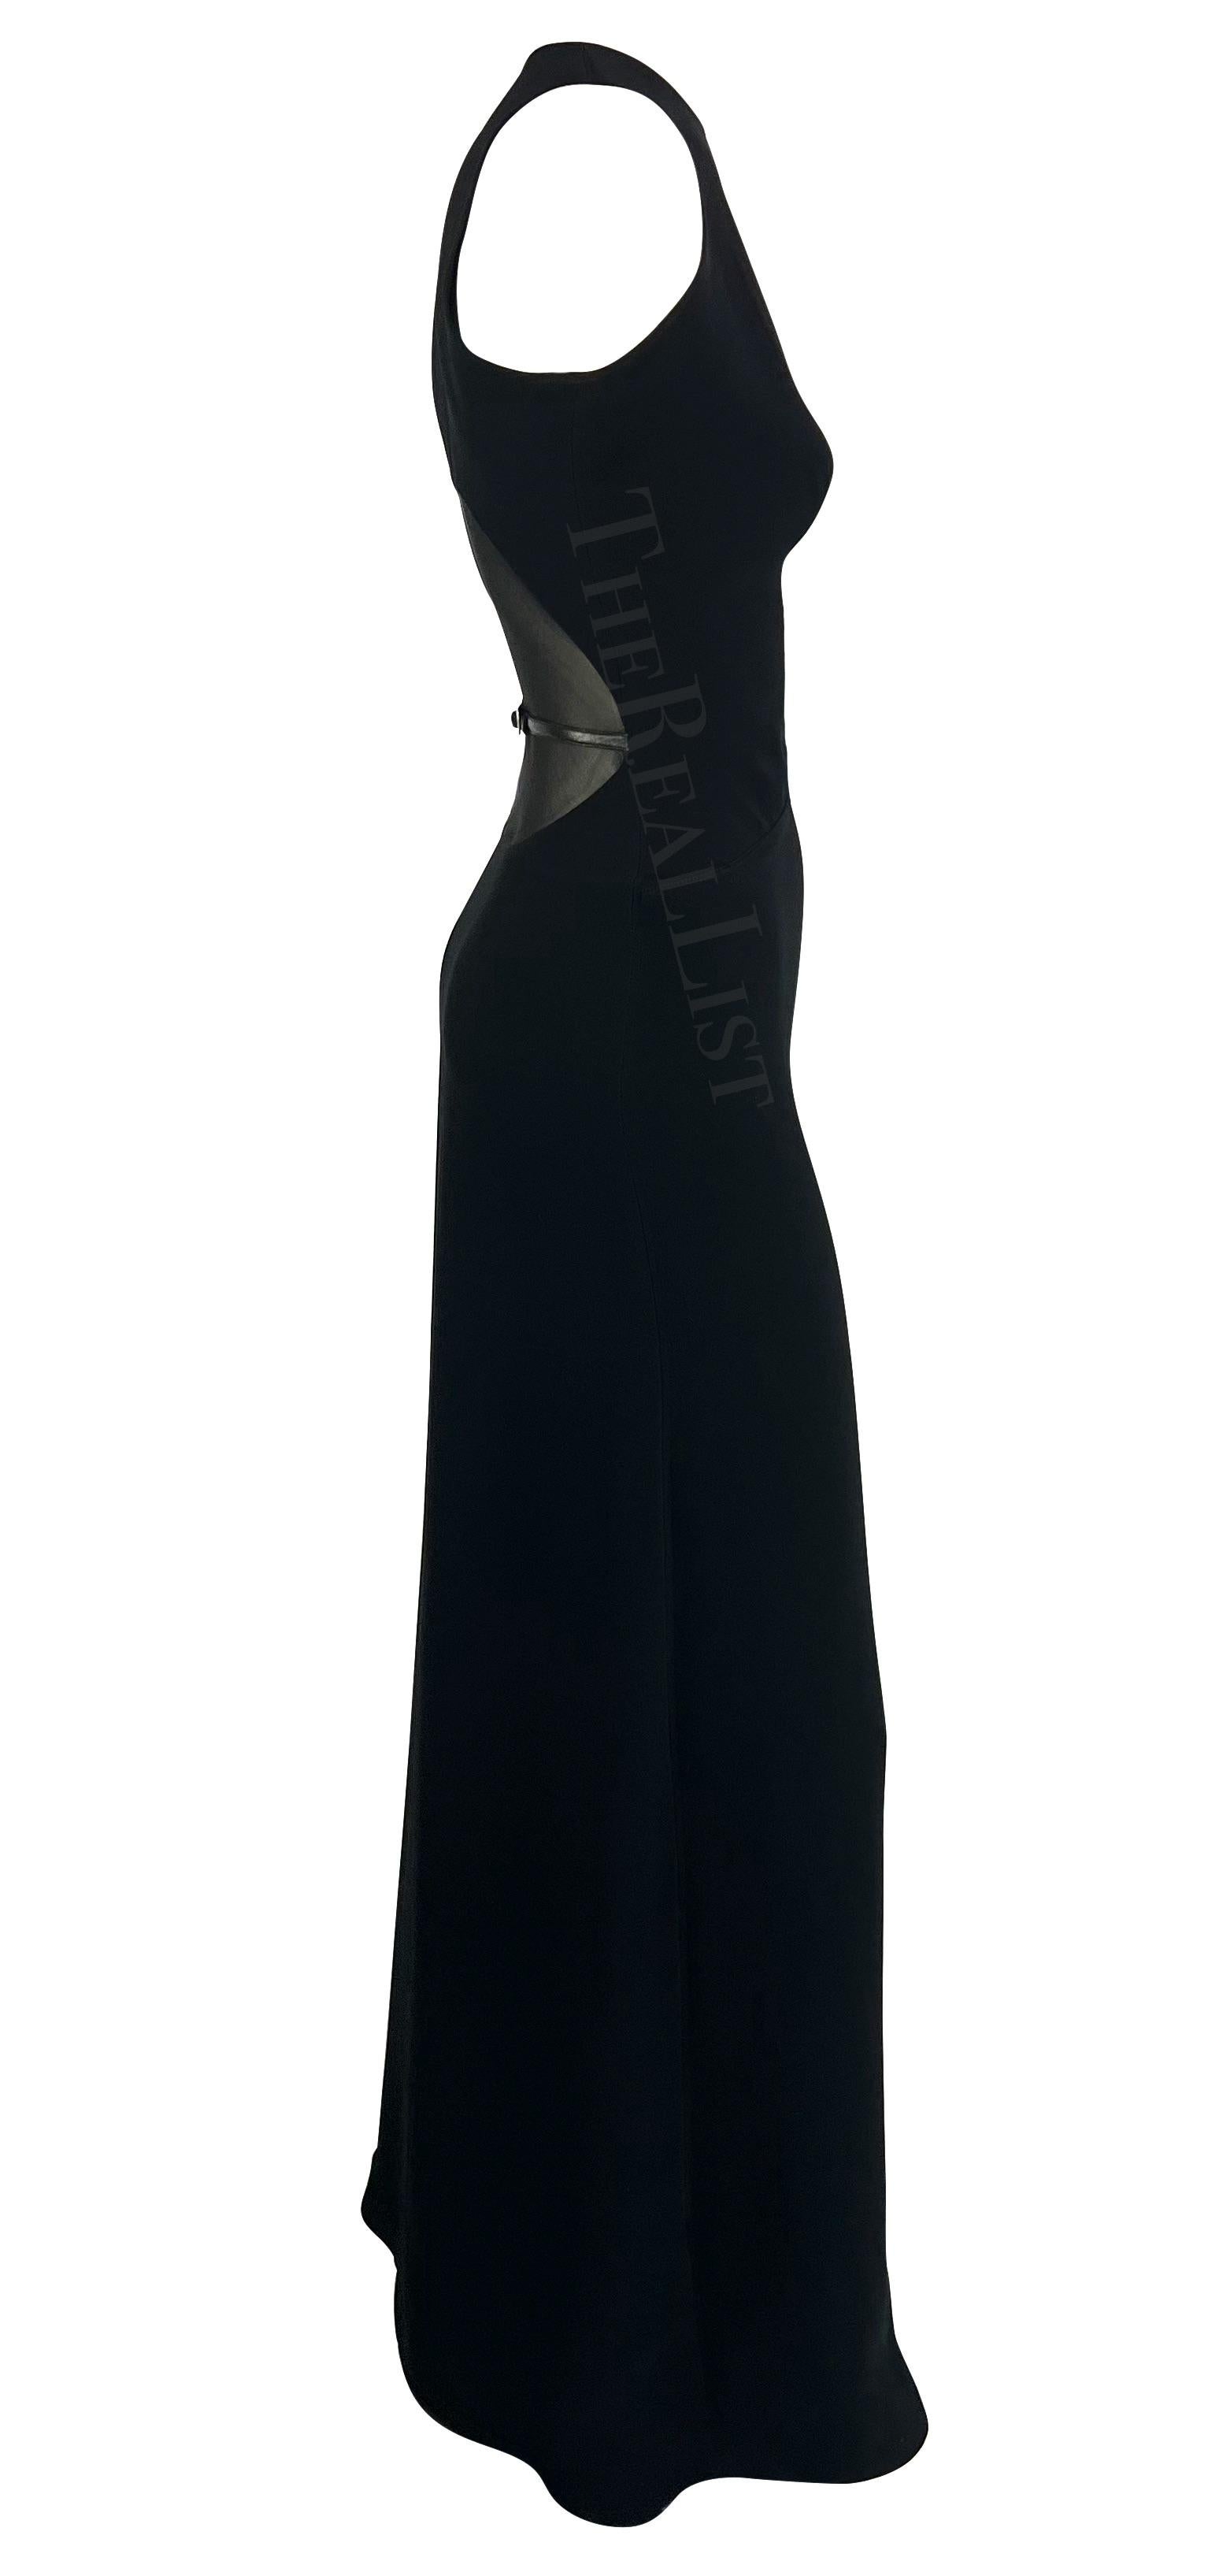 Collectional présente une fabuleuse robe noire sans manches conçue pour le défilé de la collection automne/hiver 2001 de Paco Rabanne. Cette élégante robe moulante présente un décolleté haut et une échancrure recouverte de maille transparente au